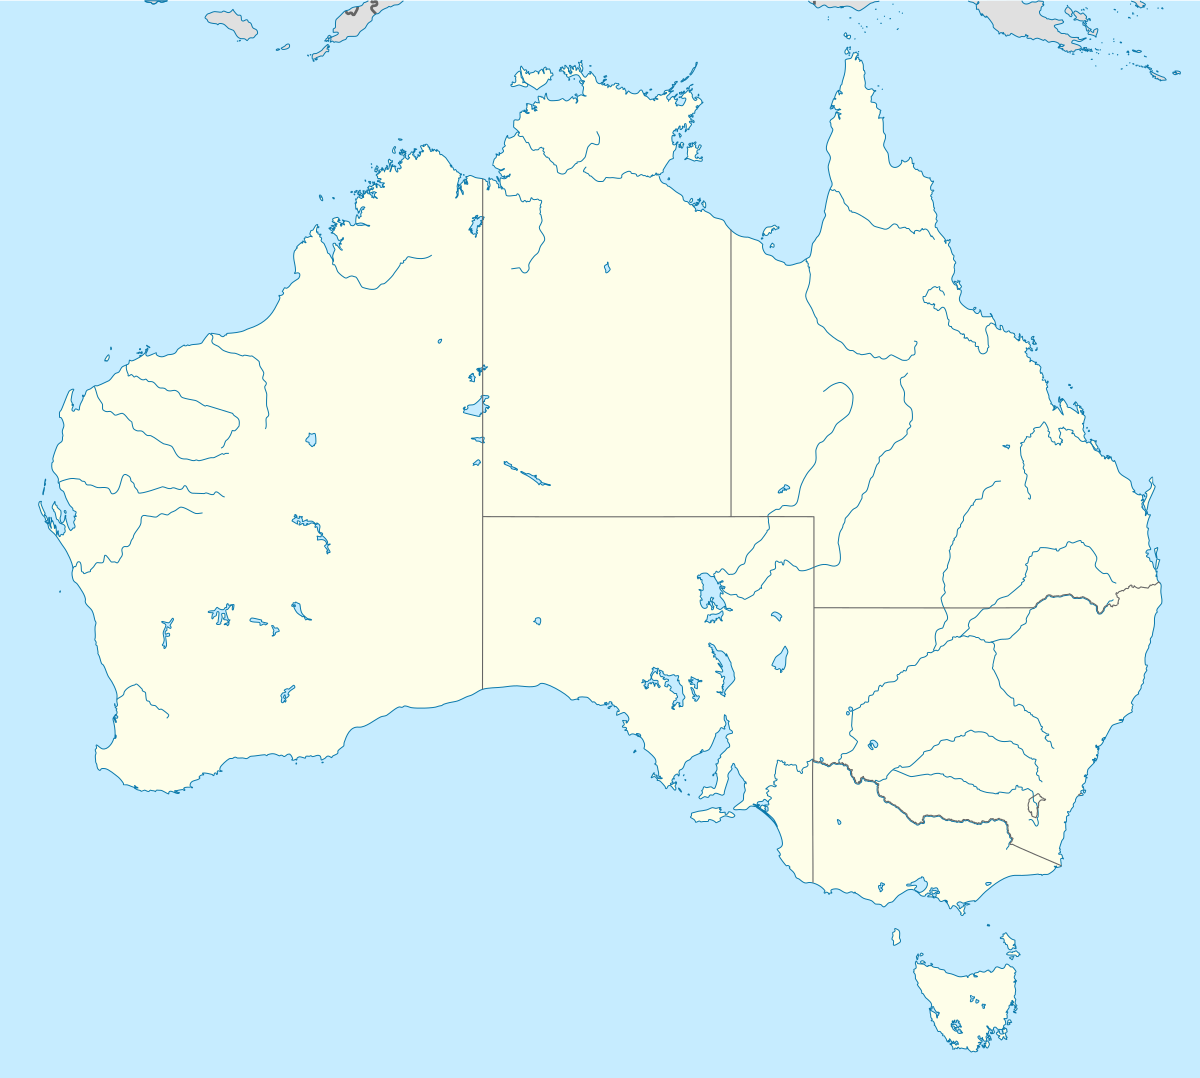 Sídney ubicada en Australia